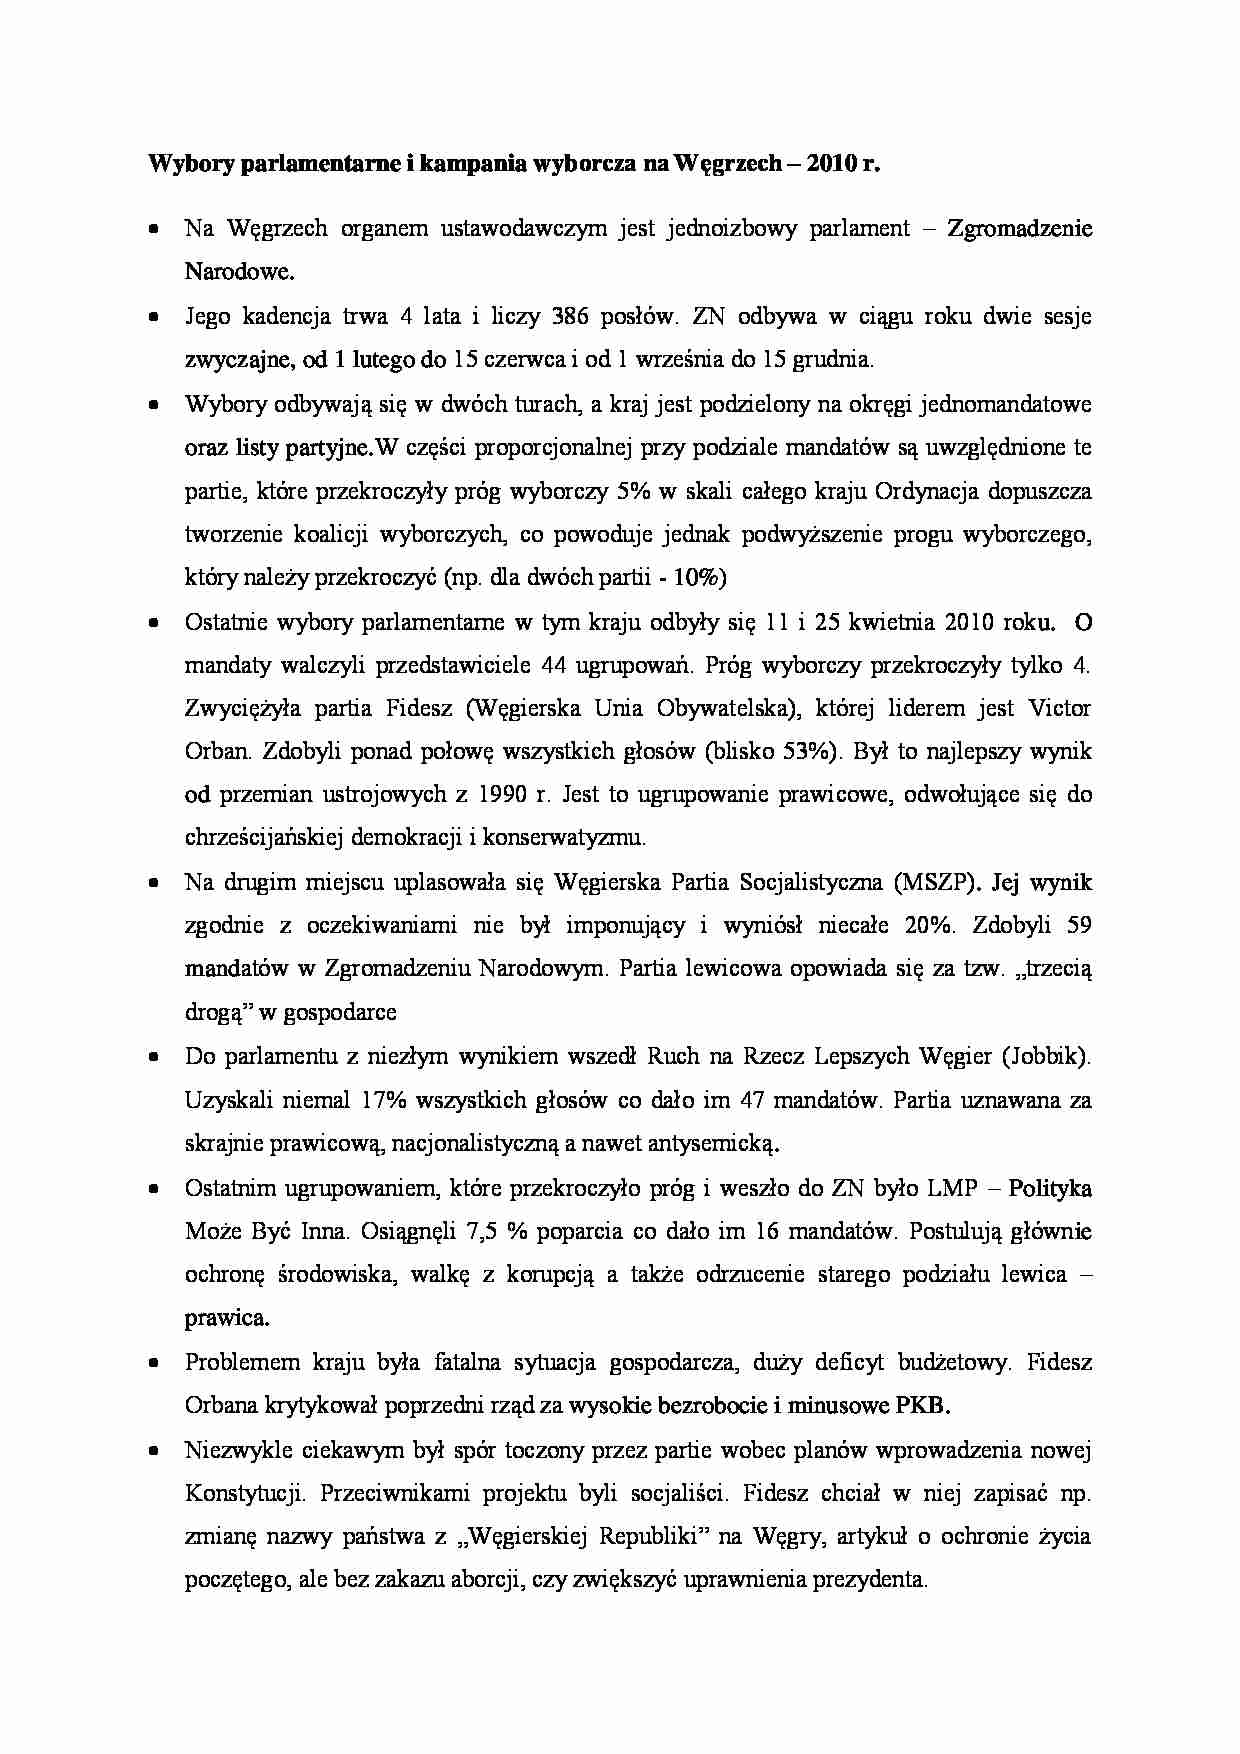 Wybory parlamentarne i kampania wyborcza na Węgrzech - wykład - strona 1